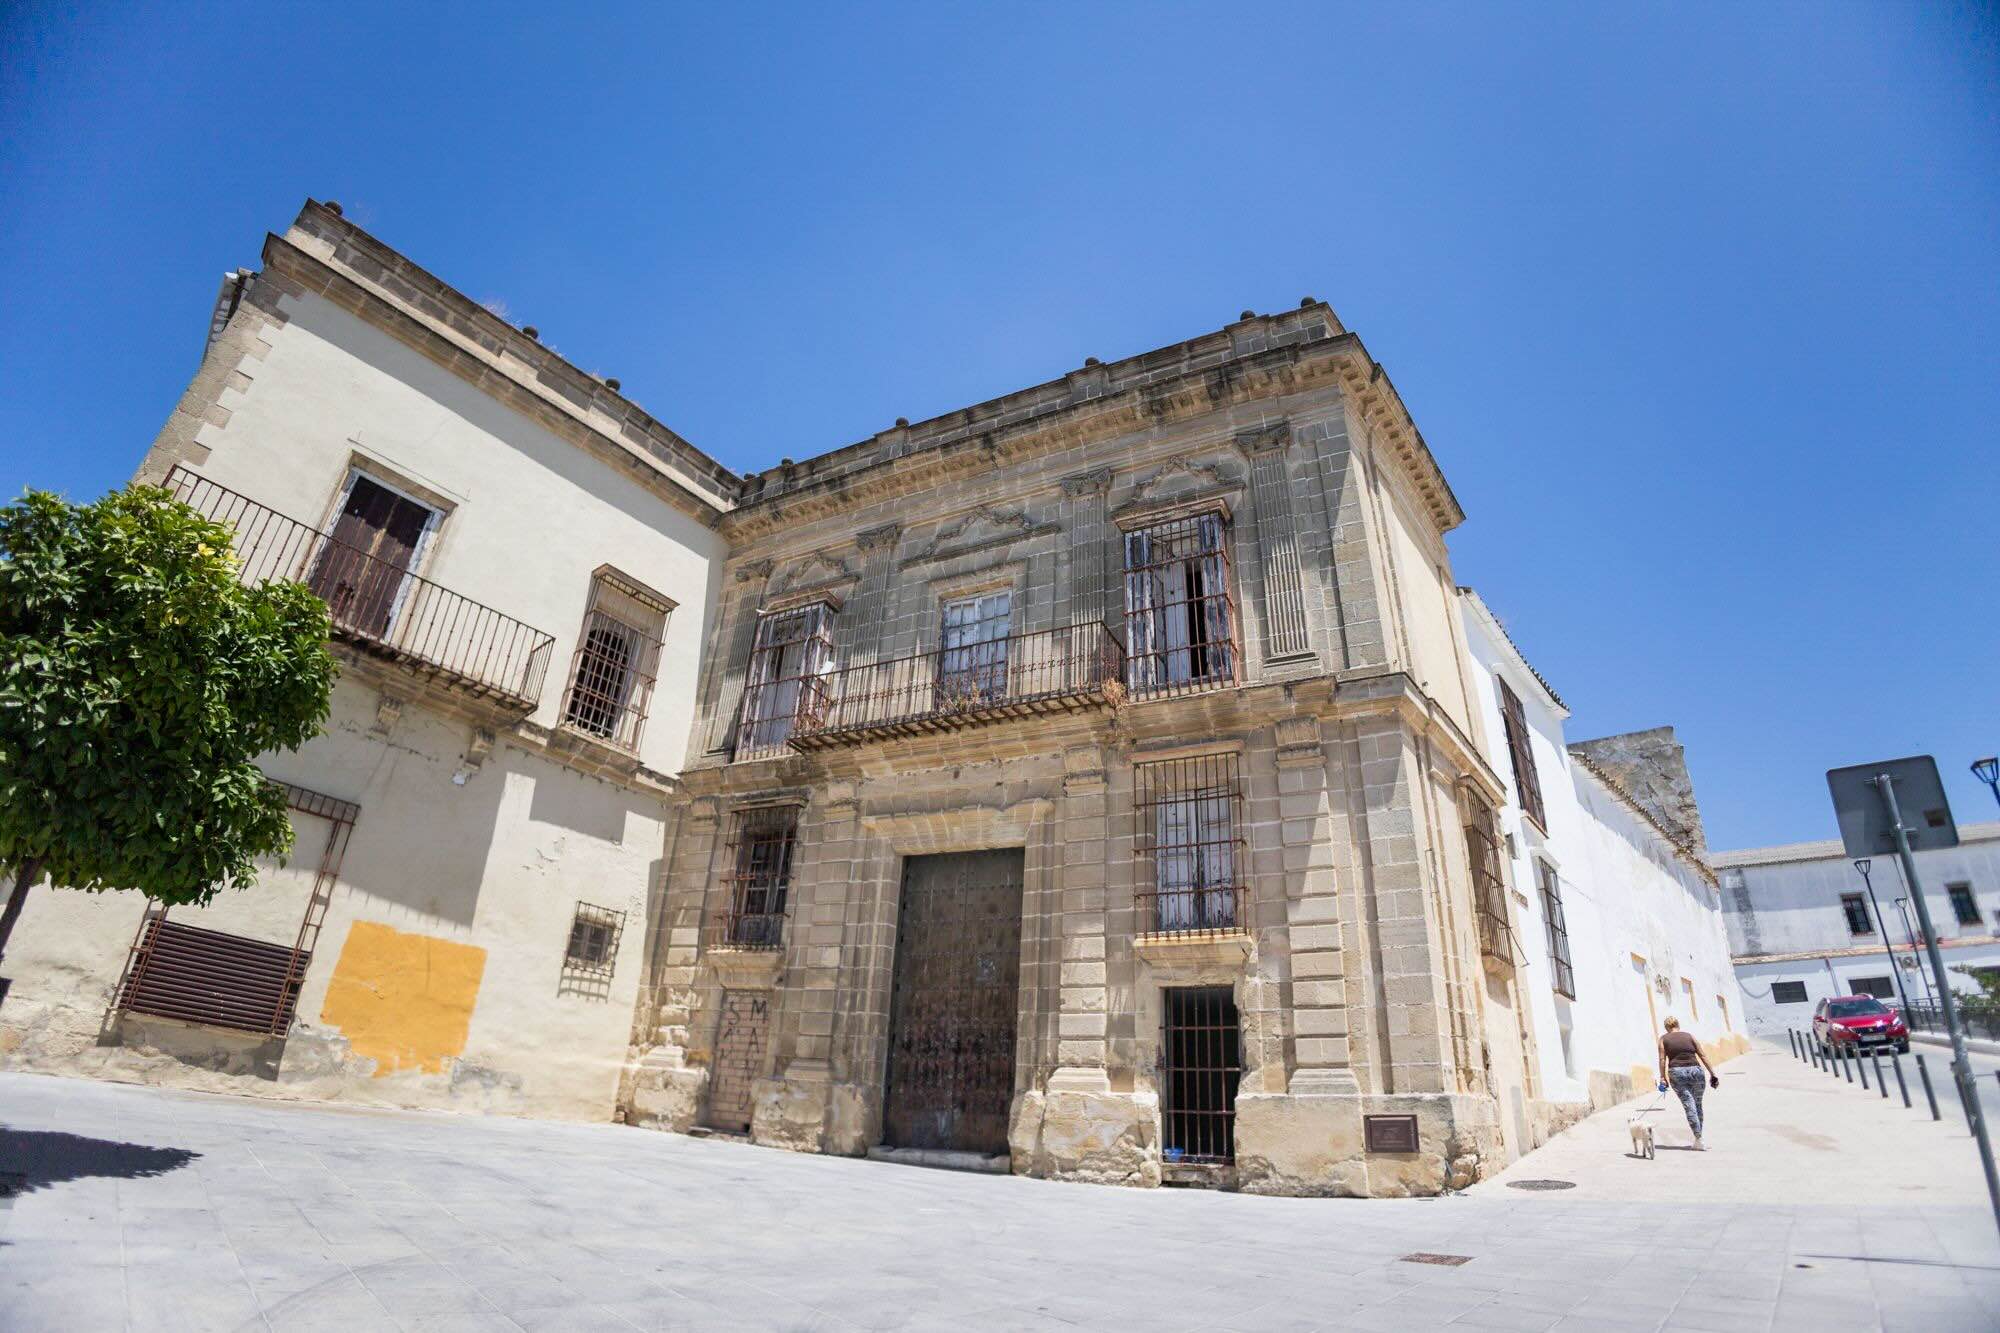 En primer término, el palacio de Montegil, que formará parte del futuro hotel Plaza Belén, con continuidad en las fincas de San Honorio, en una imagen de este lunes a mediodía.